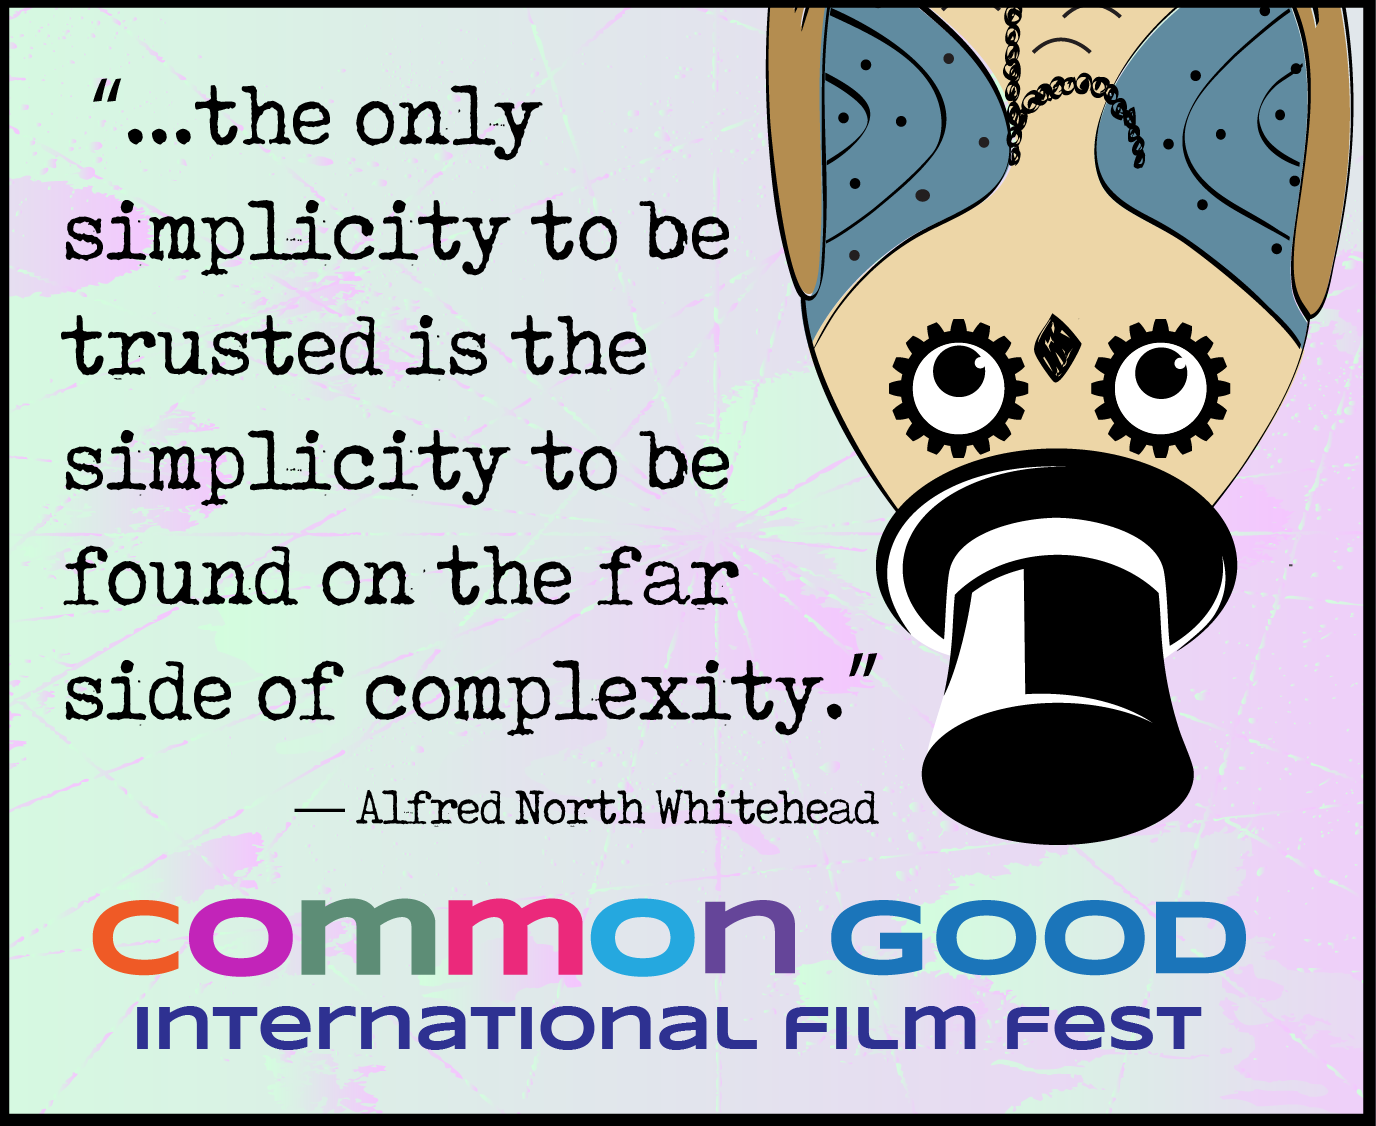 Common Good Film Festival Meme 2